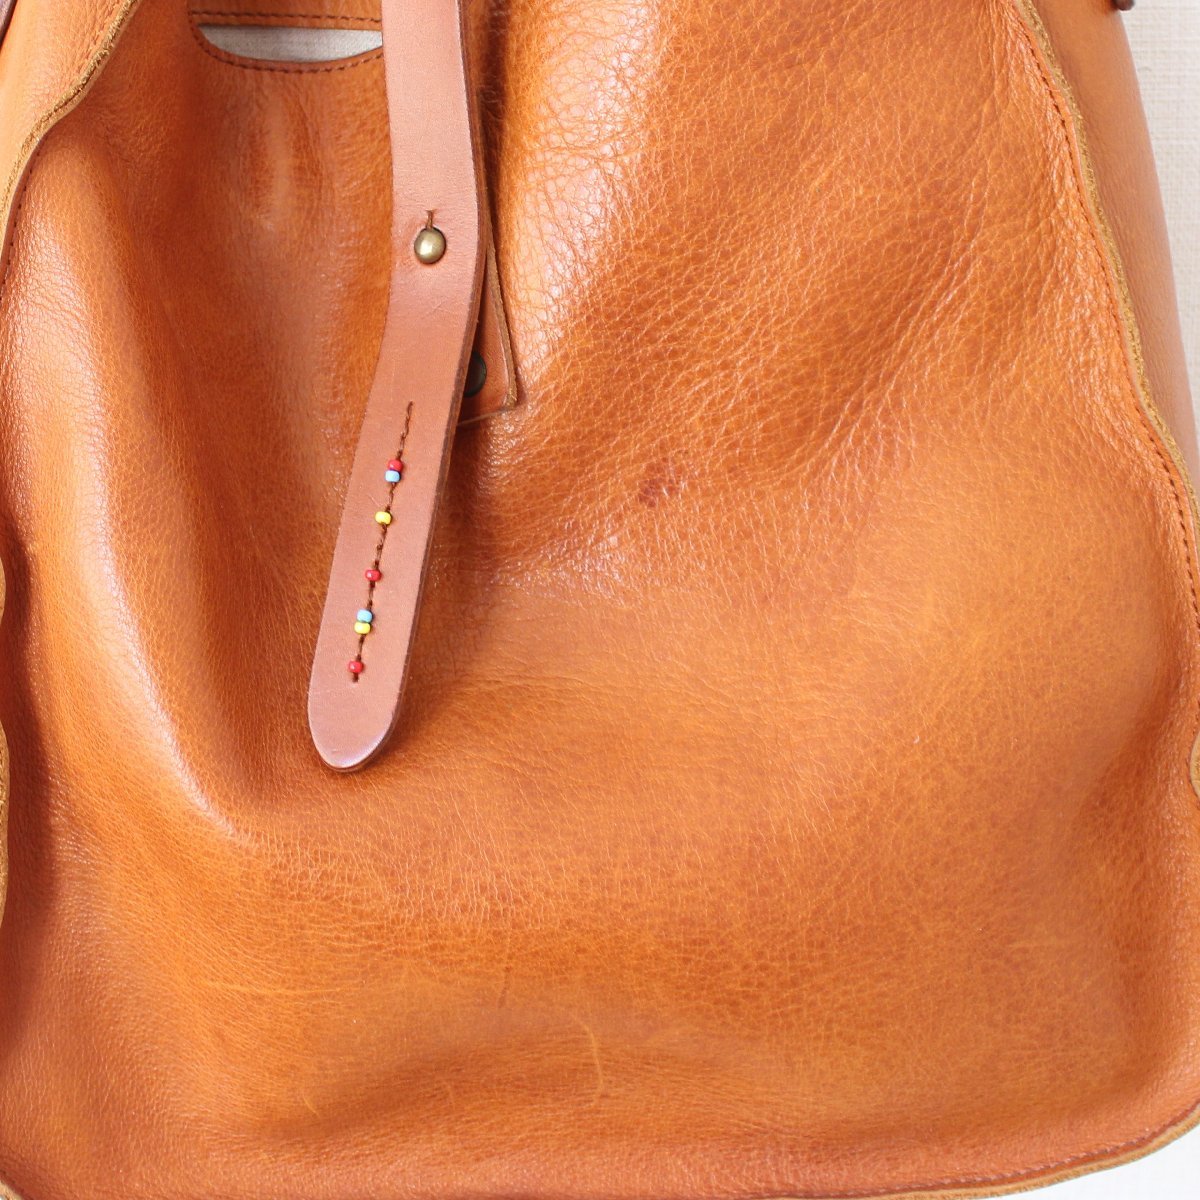 SLOWs low leather bag bono polis shoulder bag Tochigi leather bright tea color (w-1320818)